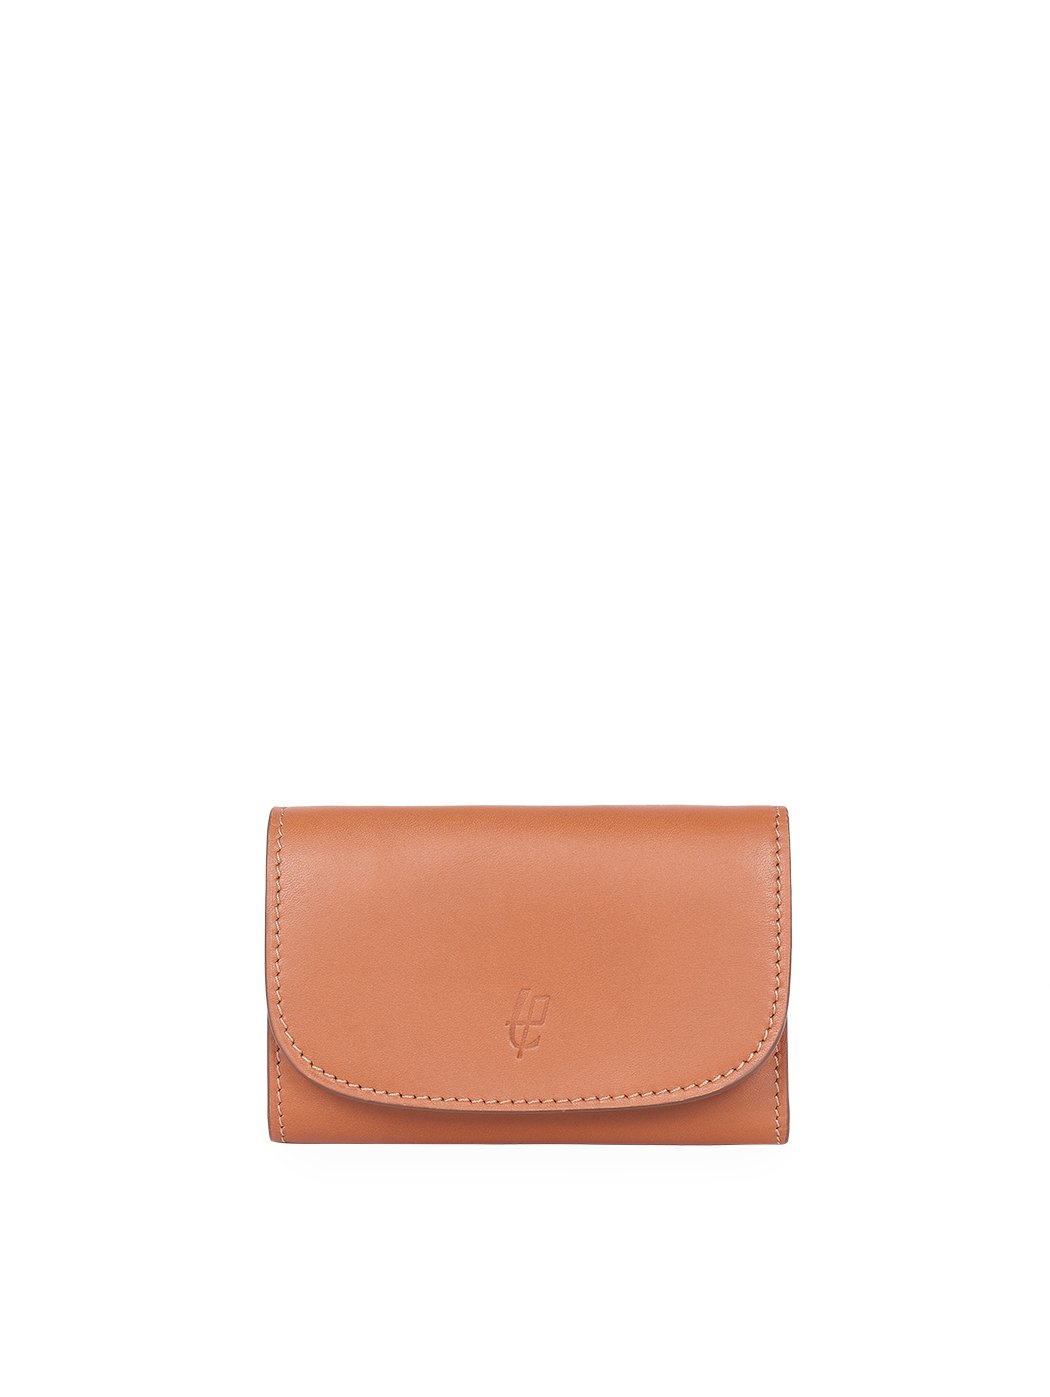 Компактный бумажник с карманом для мелочи на молнии коричневого цвета